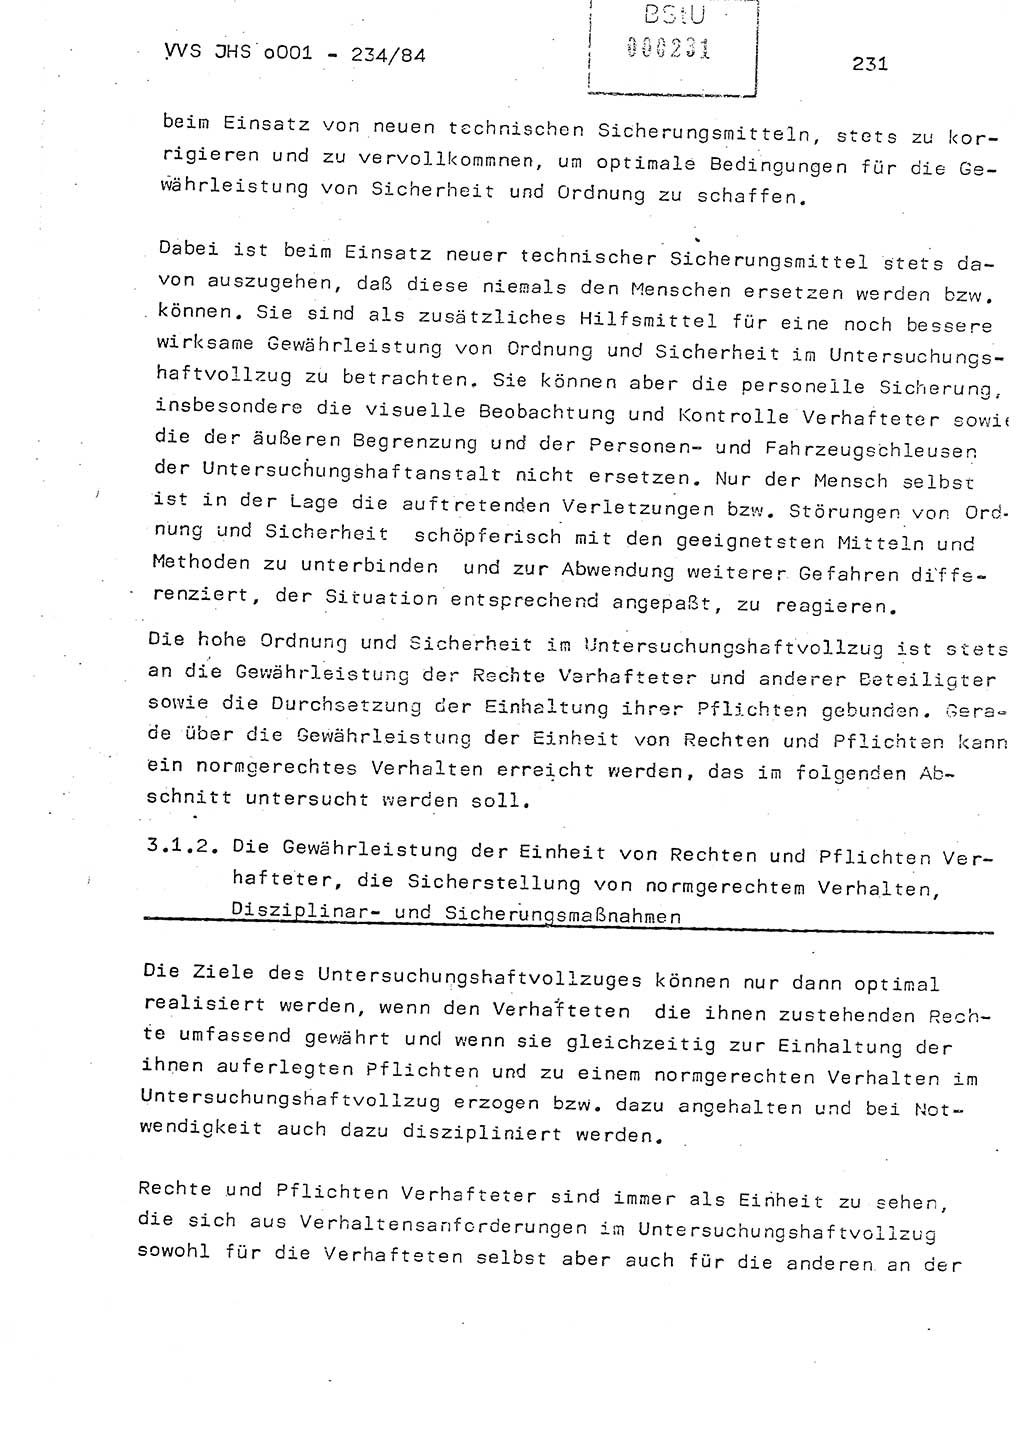 Dissertation Oberst Siegfried Rataizick (Abt. ⅩⅣ), Oberstleutnant Volkmar Heinz (Abt. ⅩⅣ), Oberstleutnant Werner Stein (HA Ⅸ), Hauptmann Heinz Conrad (JHS), Ministerium für Staatssicherheit (MfS) [Deutsche Demokratische Republik (DDR)], Juristische Hochschule (JHS), Vertrauliche Verschlußsache (VVS) o001-234/84, Potsdam 1984, Seite 231 (Diss. MfS DDR JHS VVS o001-234/84 1984, S. 231)